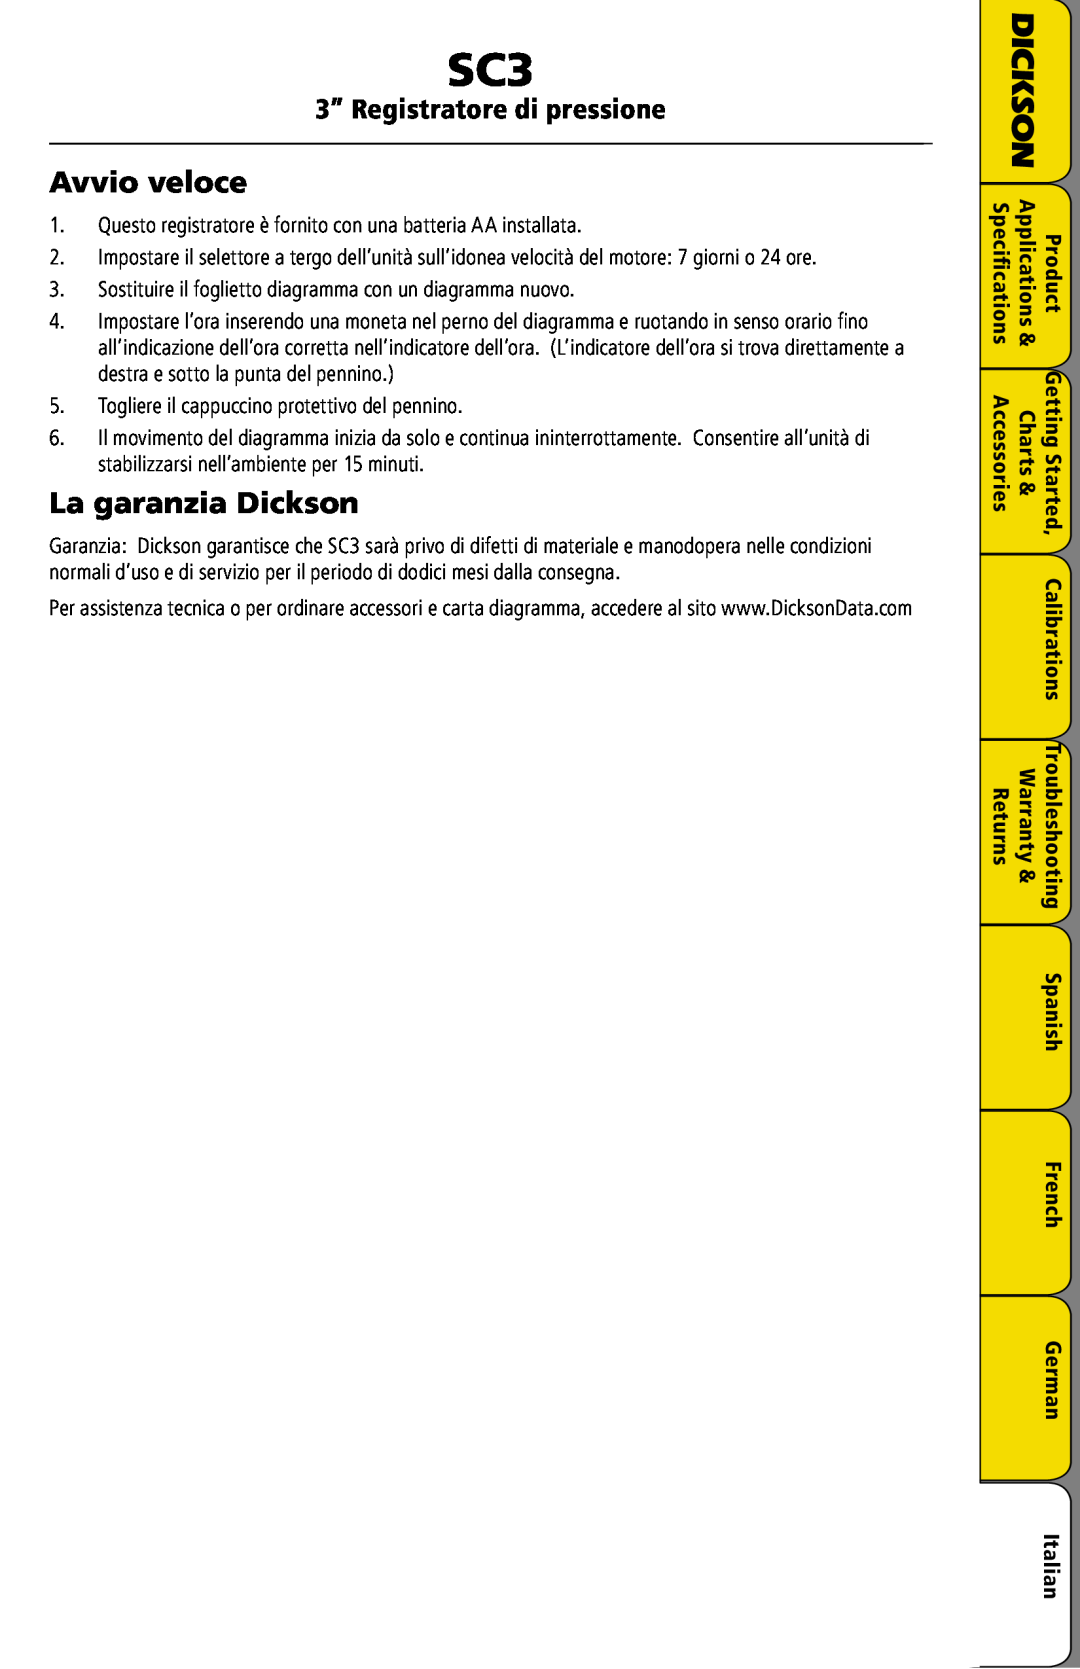 Dickson Industrial SC3 manual Avvio veloce, La garanzia Dickson, 3” Registratore di pressione 